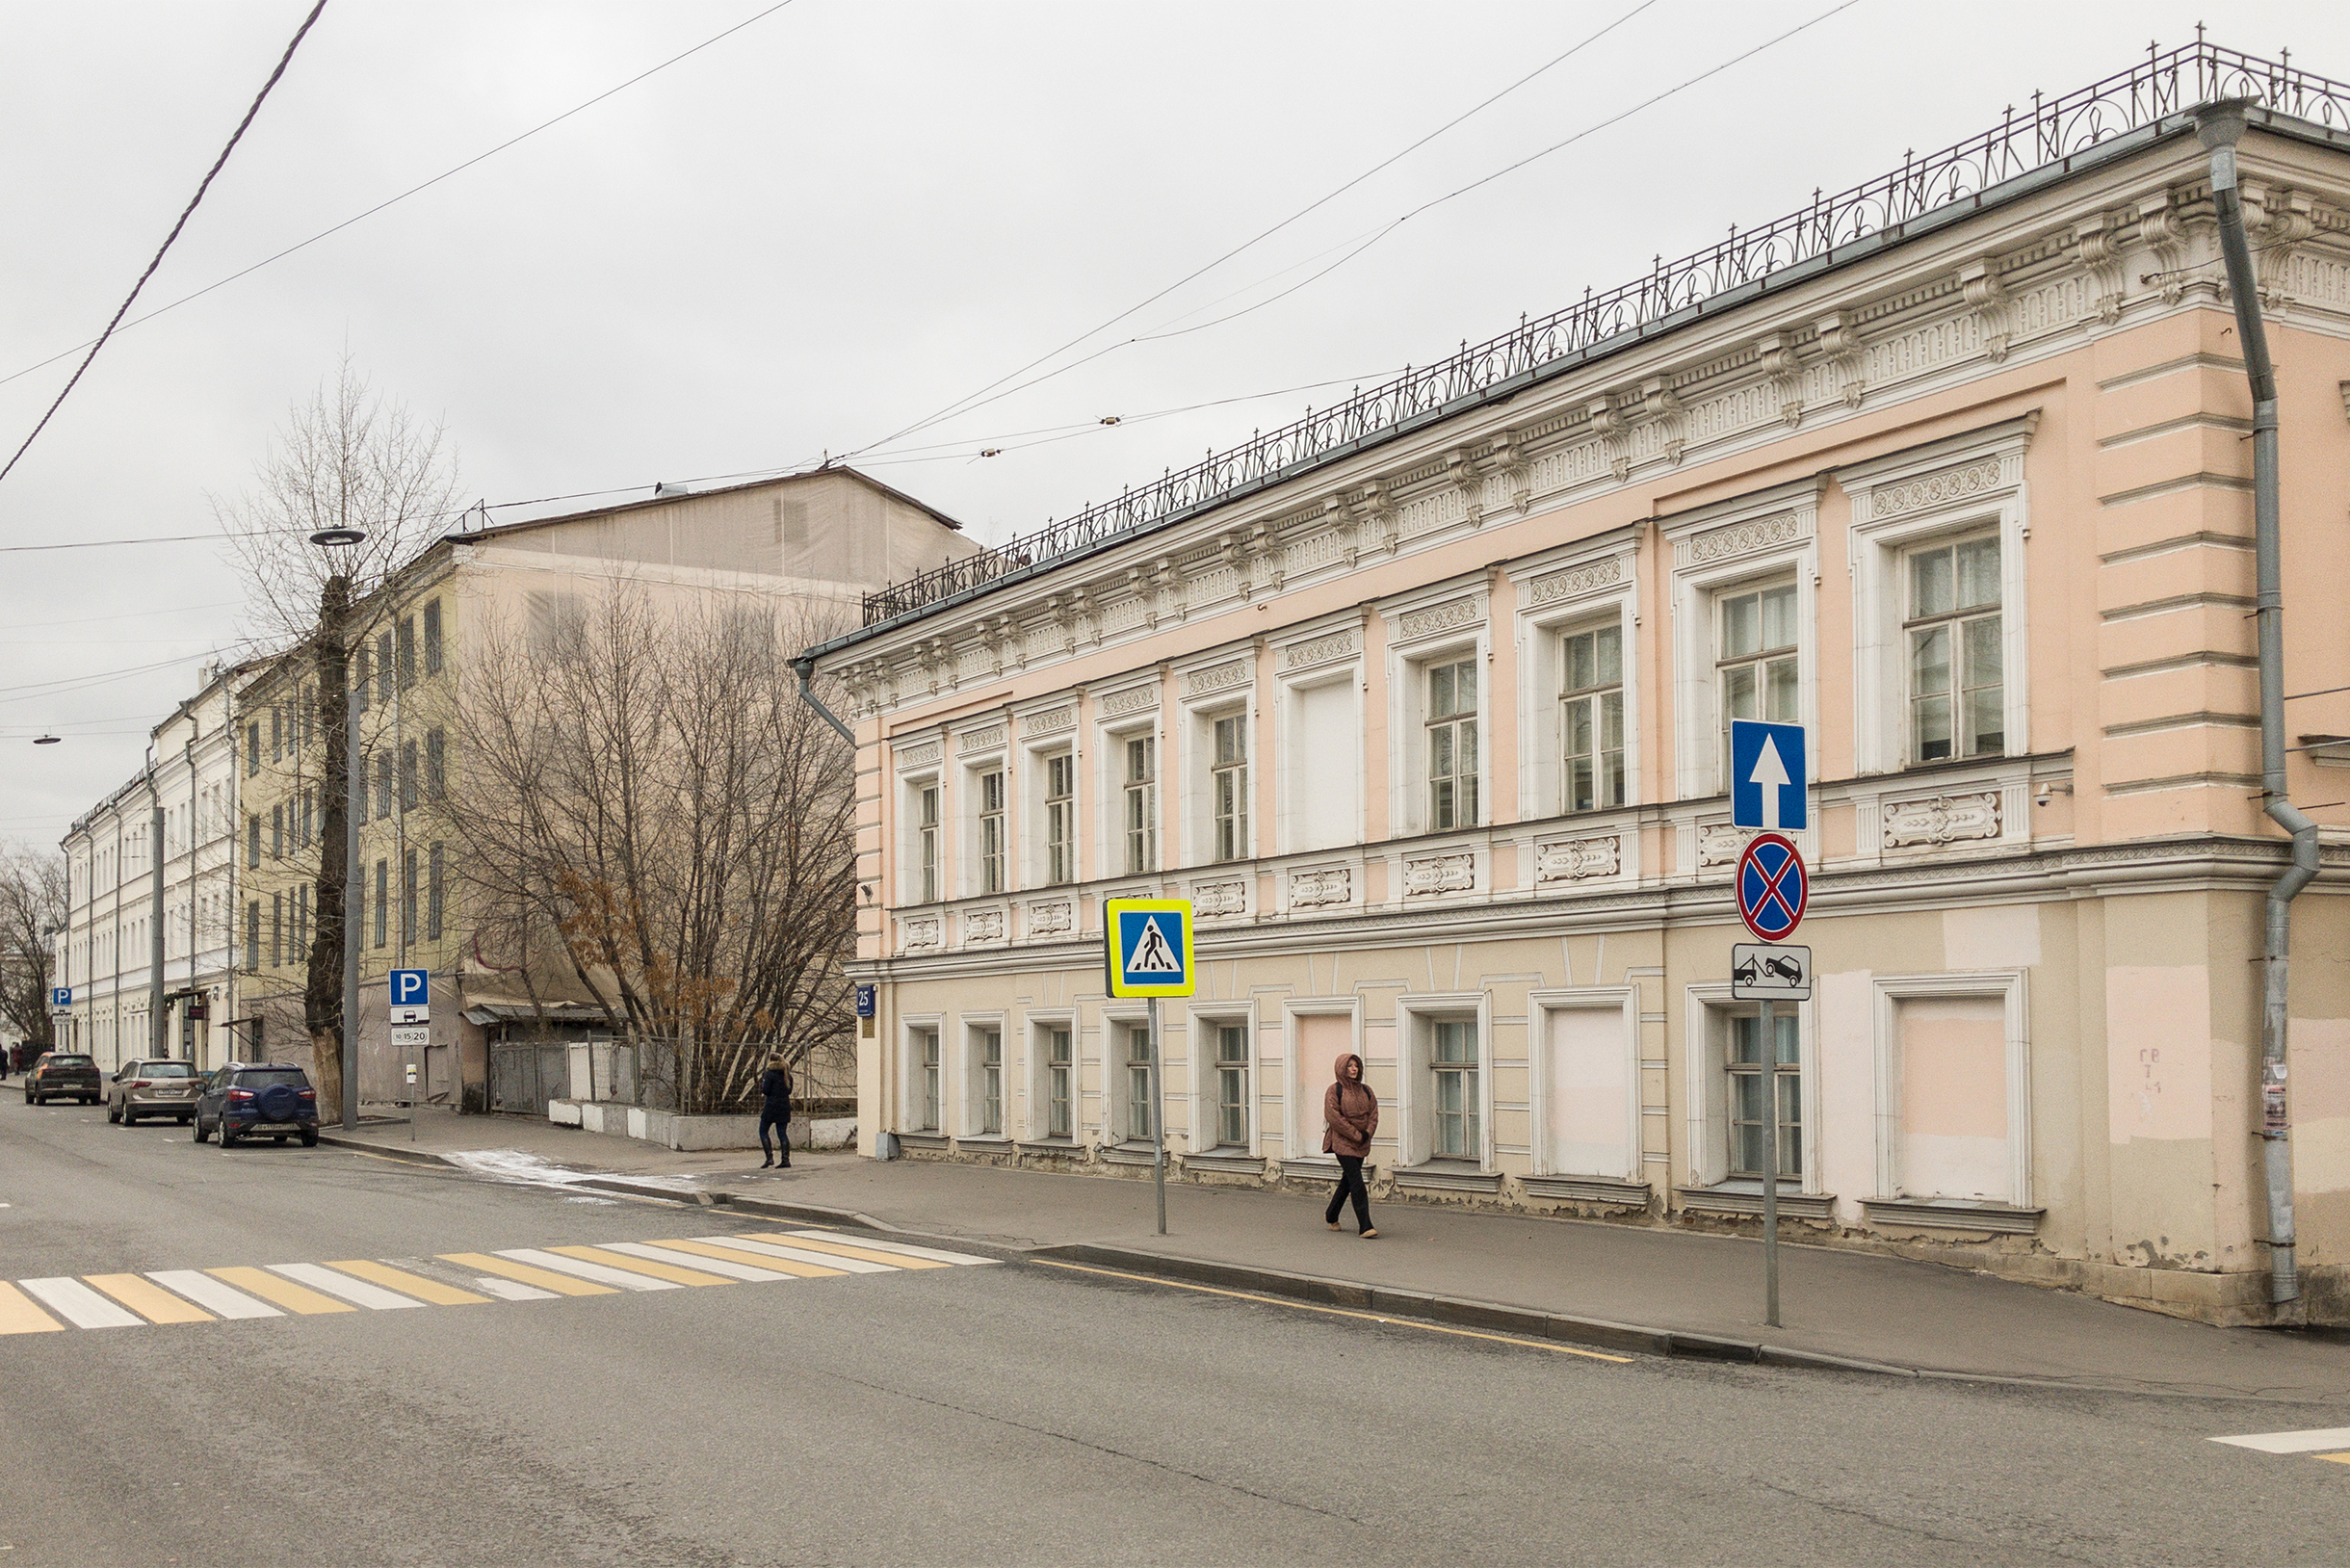 Большая часть застройки — малоэтажные дореволюционные здания, но в середине улицы есть несколько жилых домов советского периода